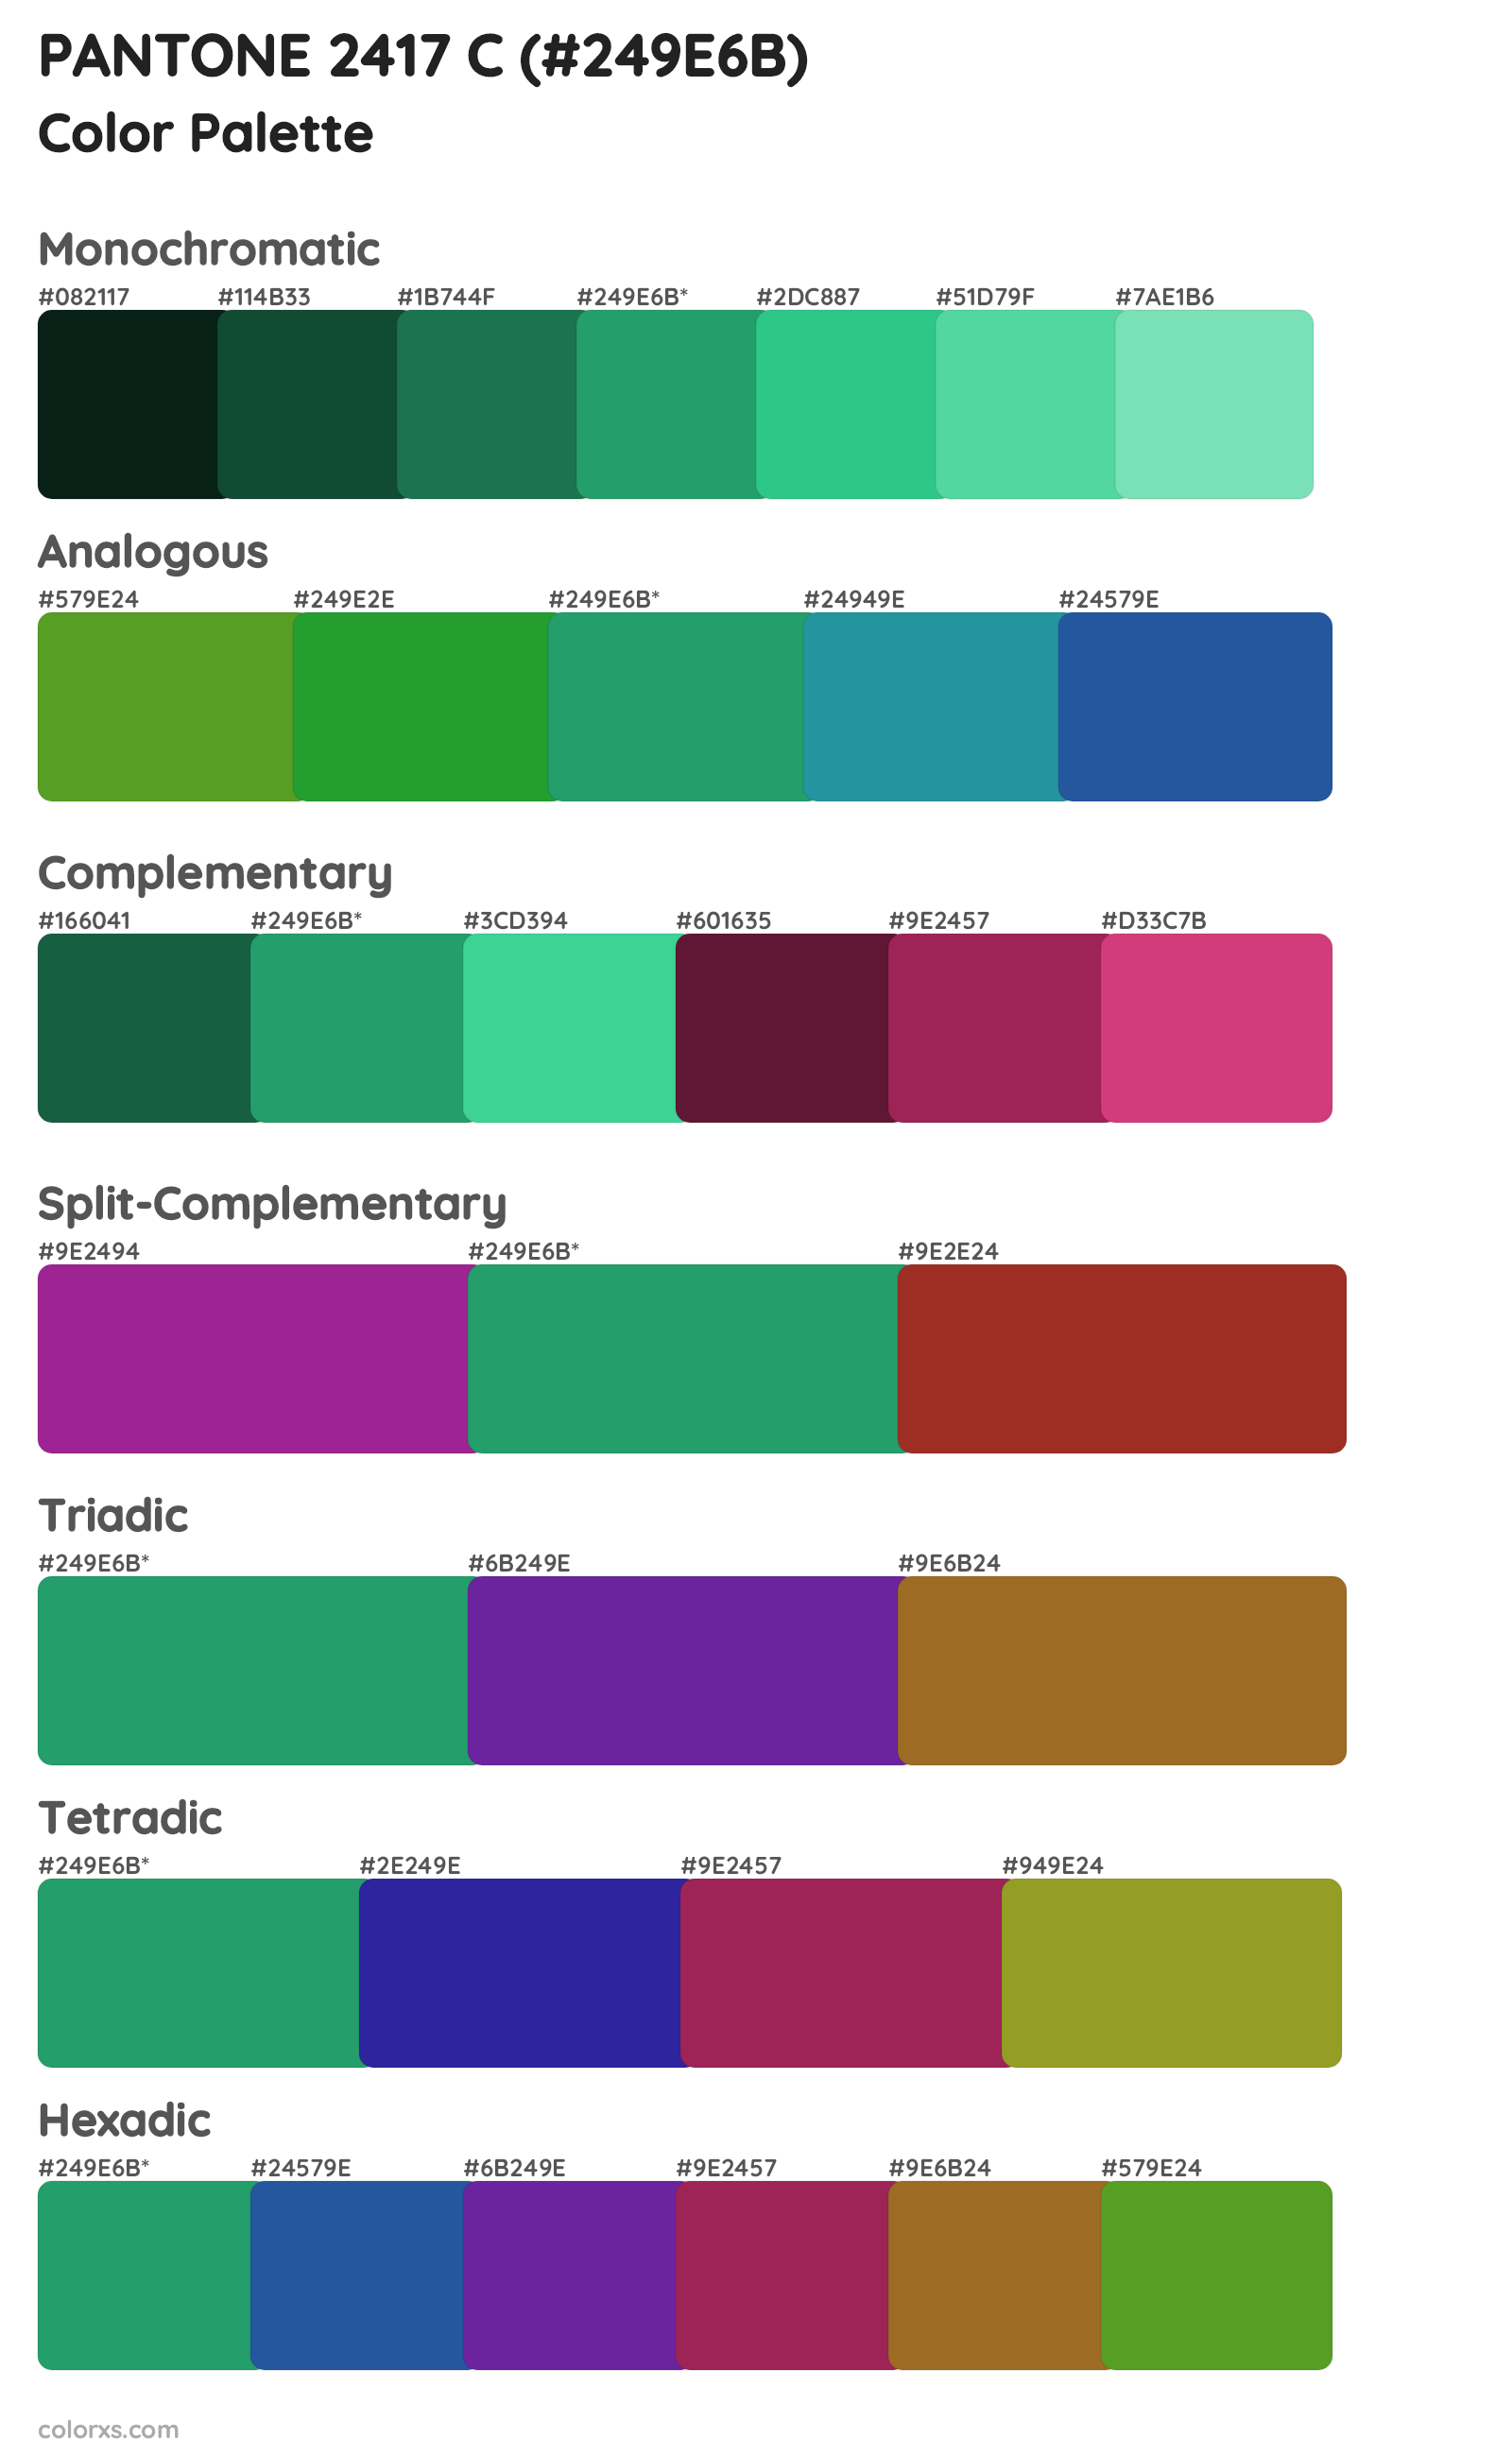 PANTONE 2417 C Color Scheme Palettes